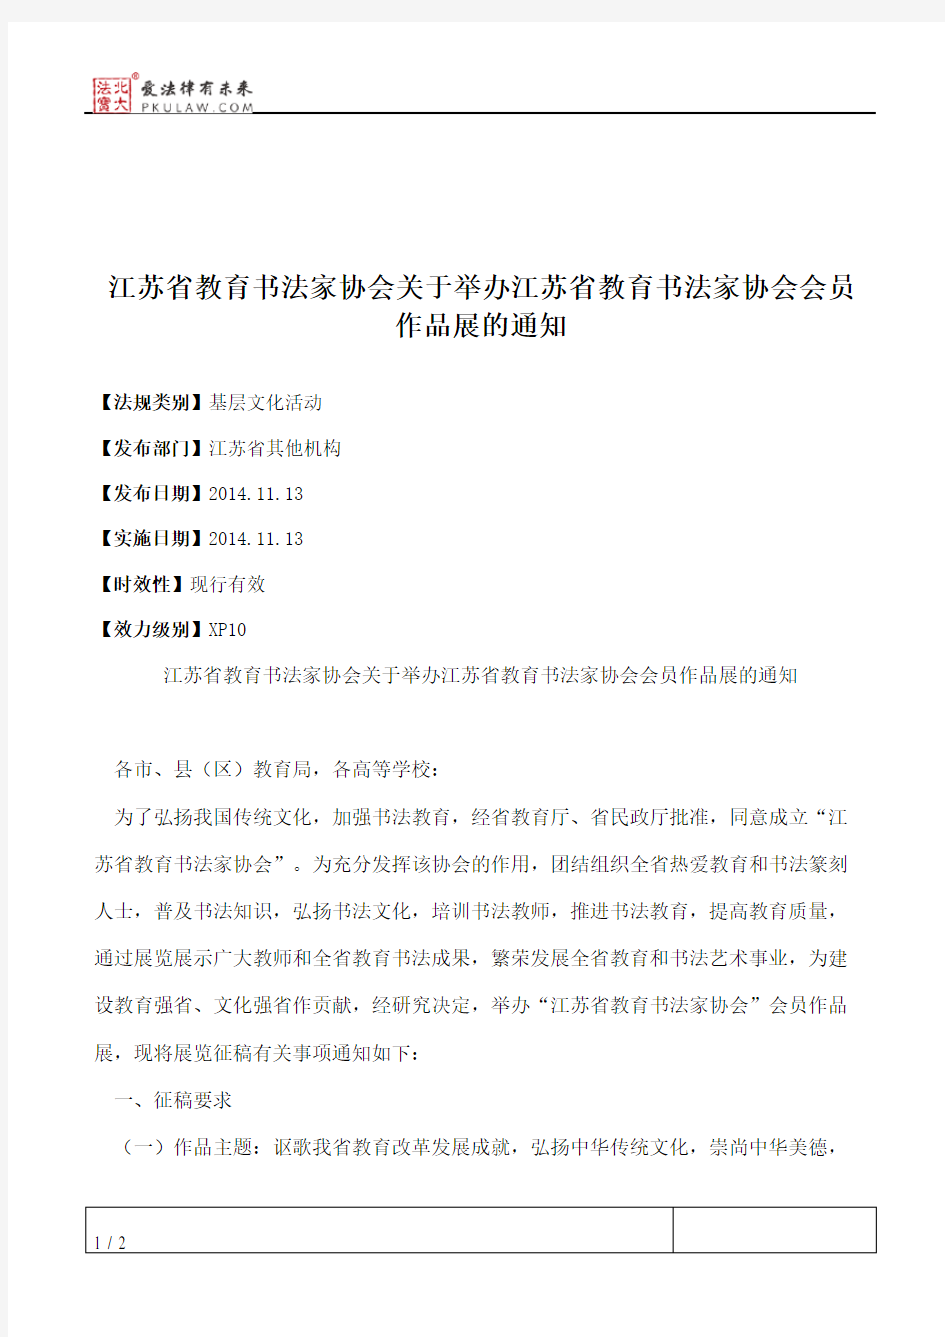 江苏省教育书法家协会关于举办江苏省教育书法家协会会员作品展的通知